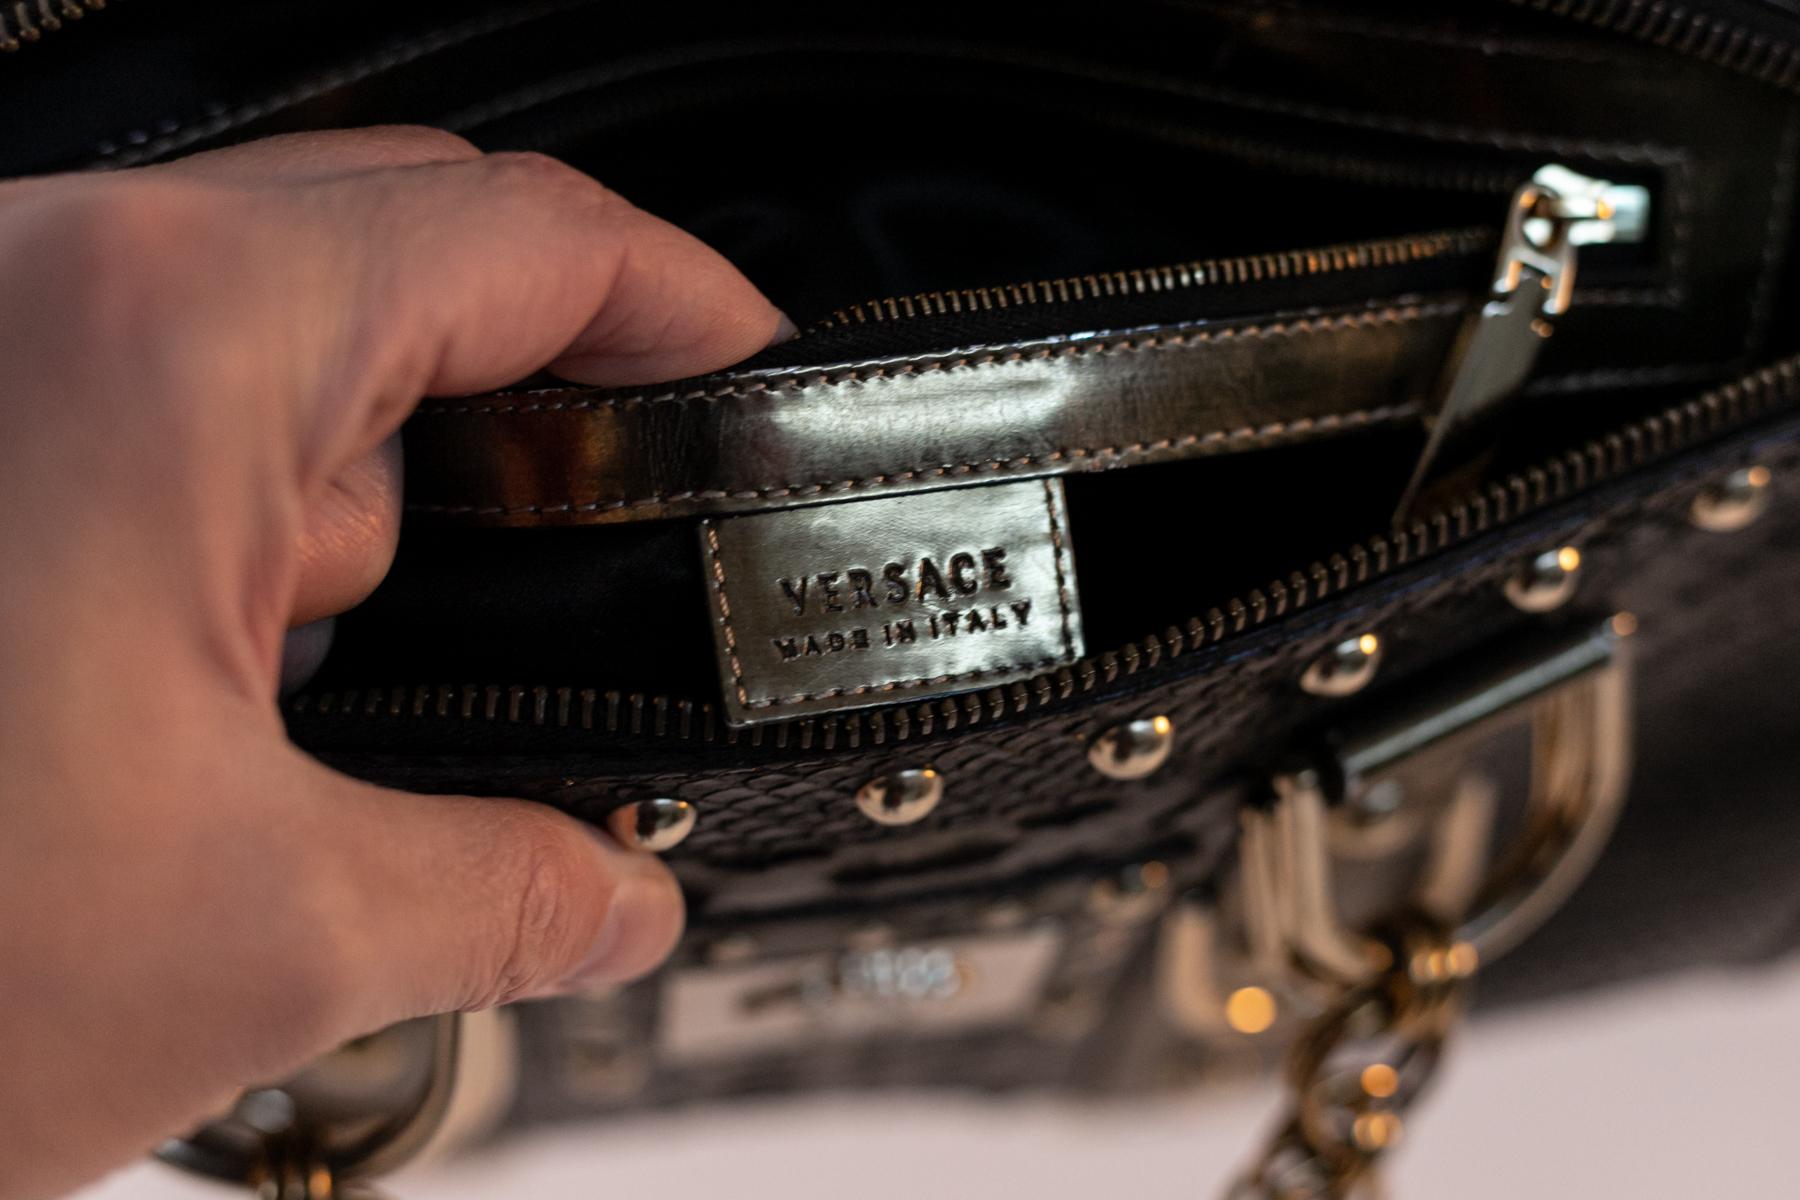 Exzentrische Lederhandtasche, entworfen vom großen Gianni Versace in den 1970er Jahren.
Die Tasche ist eine Handtasche aus schwarzem Leder mit eleganten Goldnieten.
Die Ärmel sehen aus wie auffällige goldene Ketten, sehr exzentrisch. Die Tasche hat